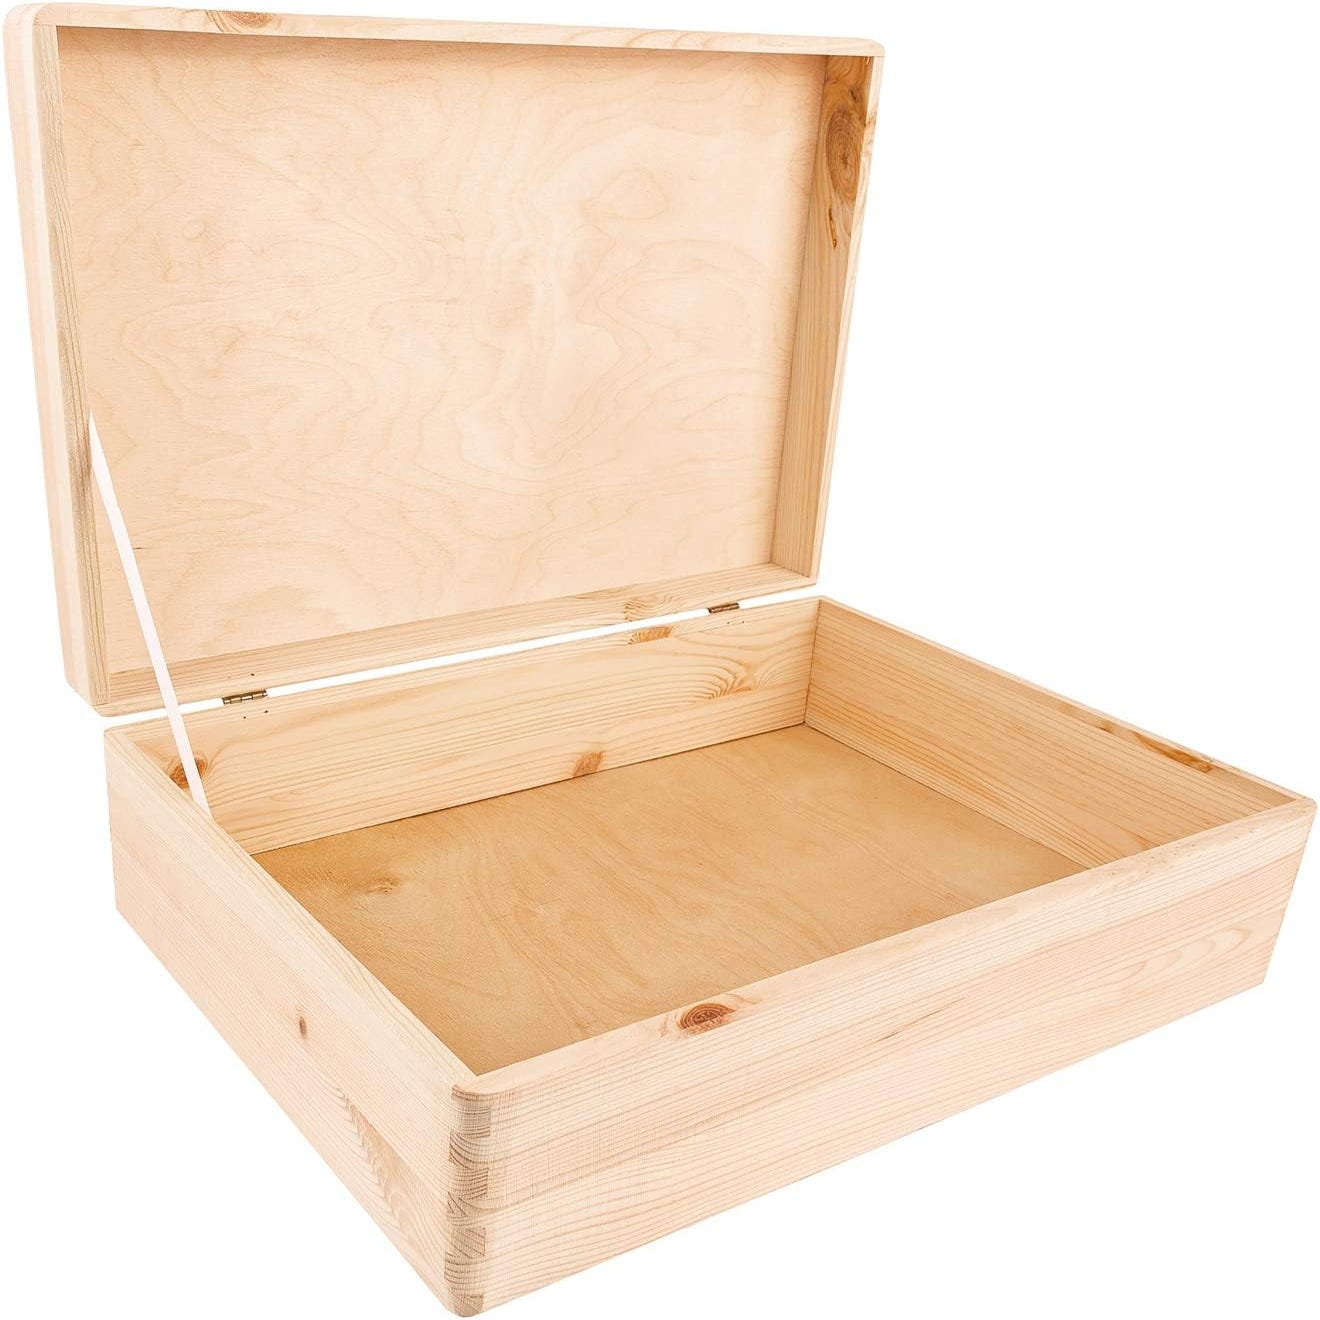 Fdit Boîte de peinture en bois Boîte de rangement d'outils de